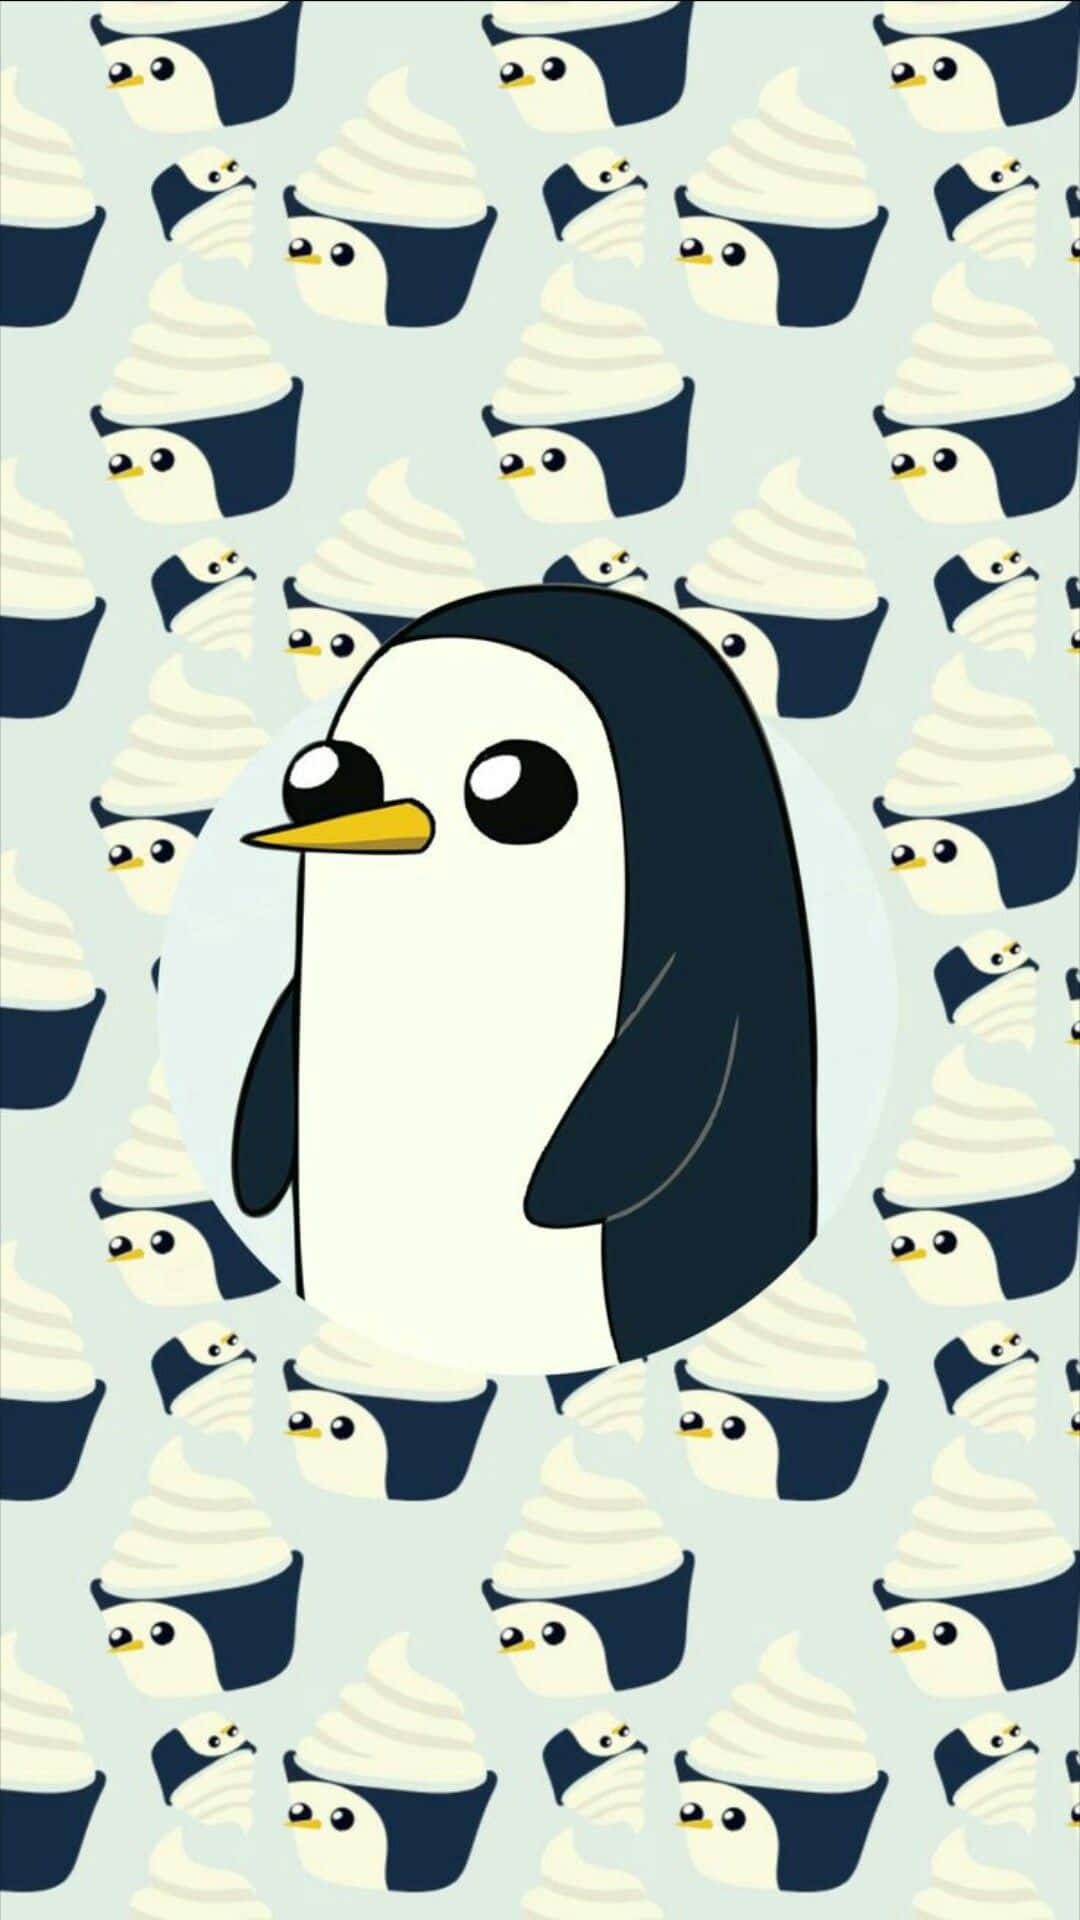 Siénteteenvuelto En La Frescura Del Invierno Con Este Adorable Fondo De Pantalla De Pingüinos.